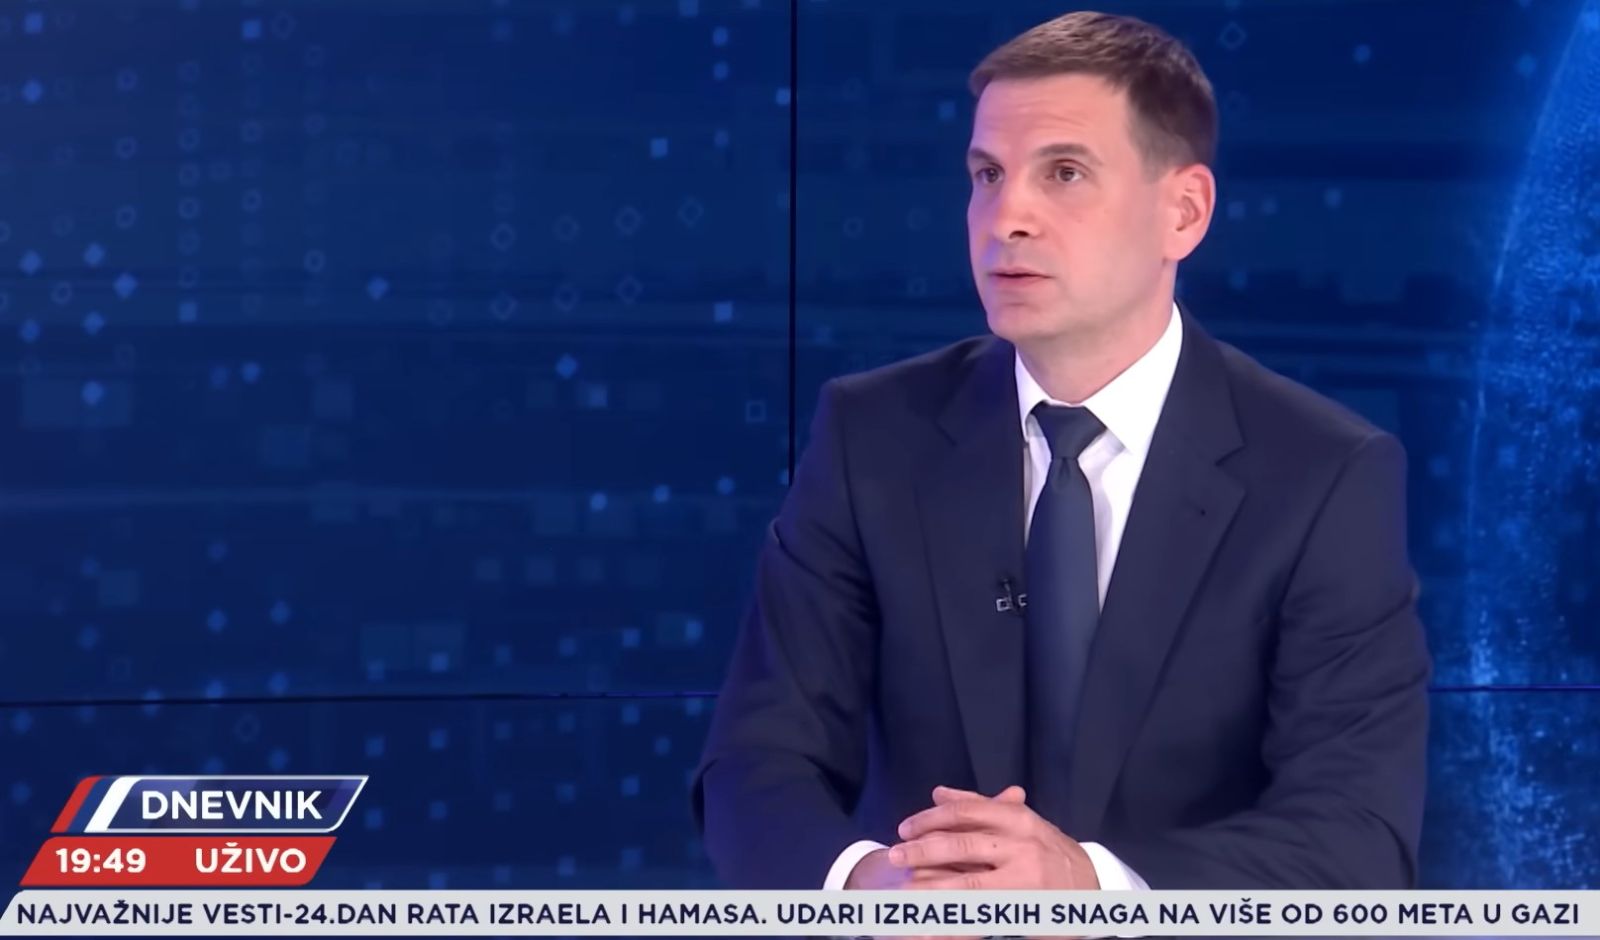 Јовановић: НАДА ће учествовати у смени власти СНС